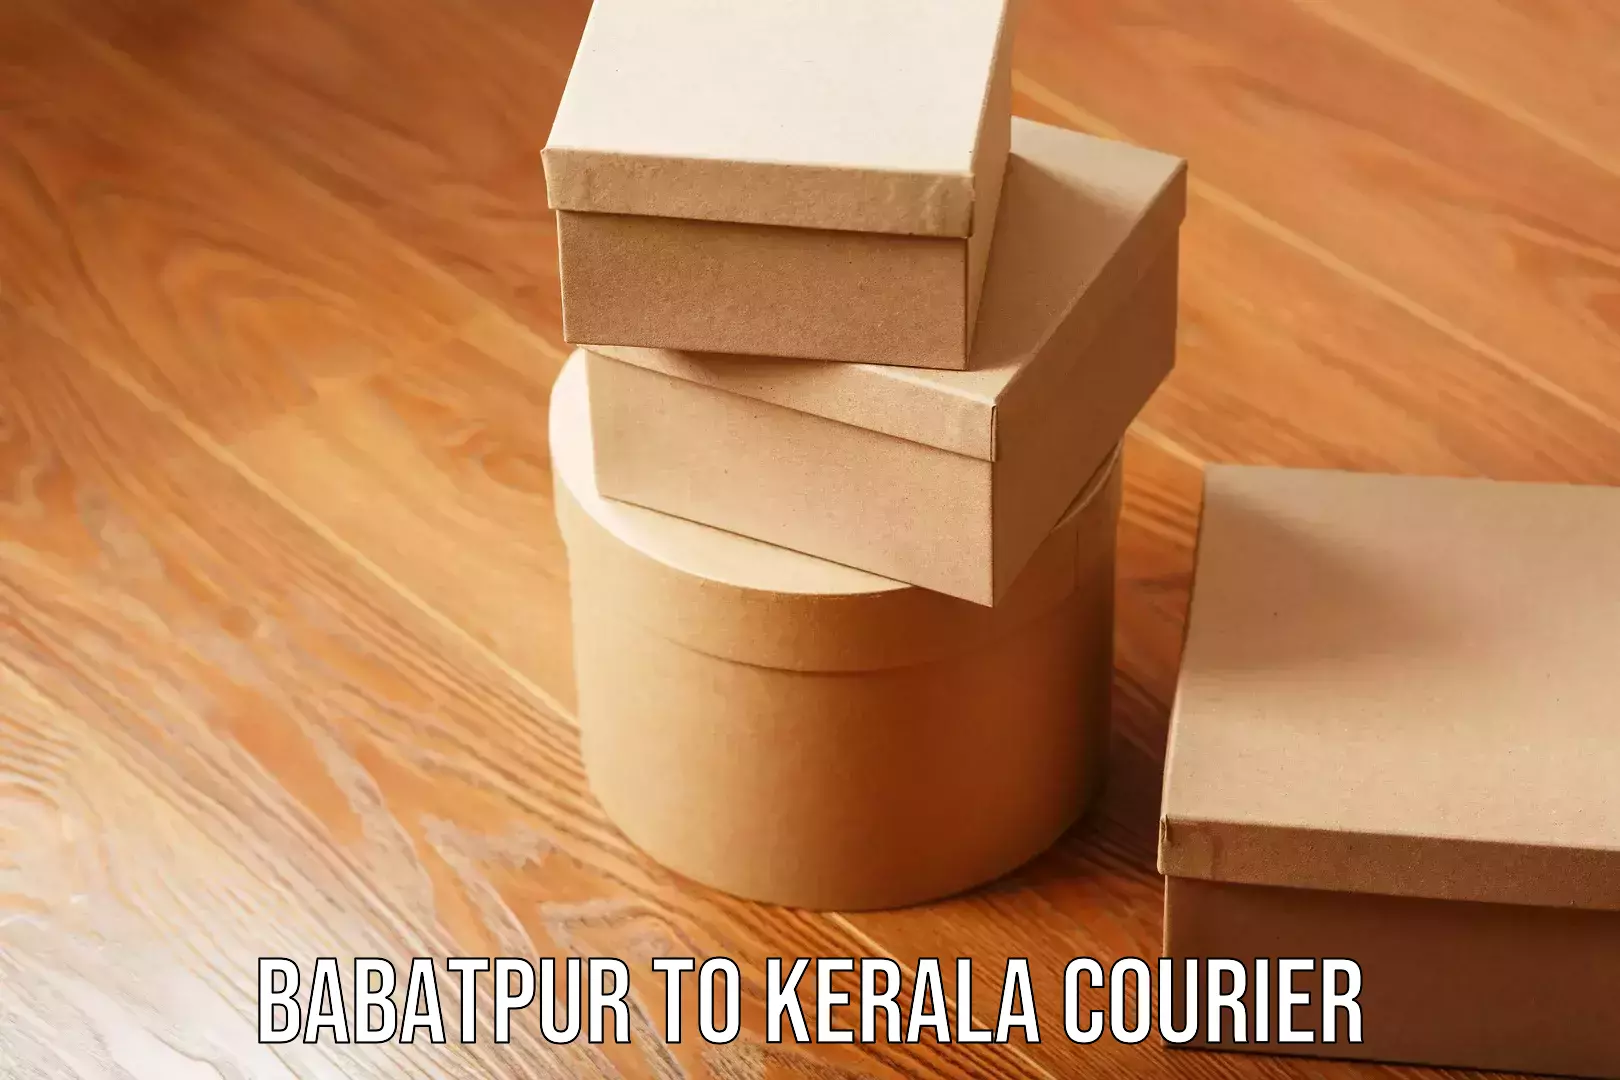 Express logistics service Babatpur to Kerala